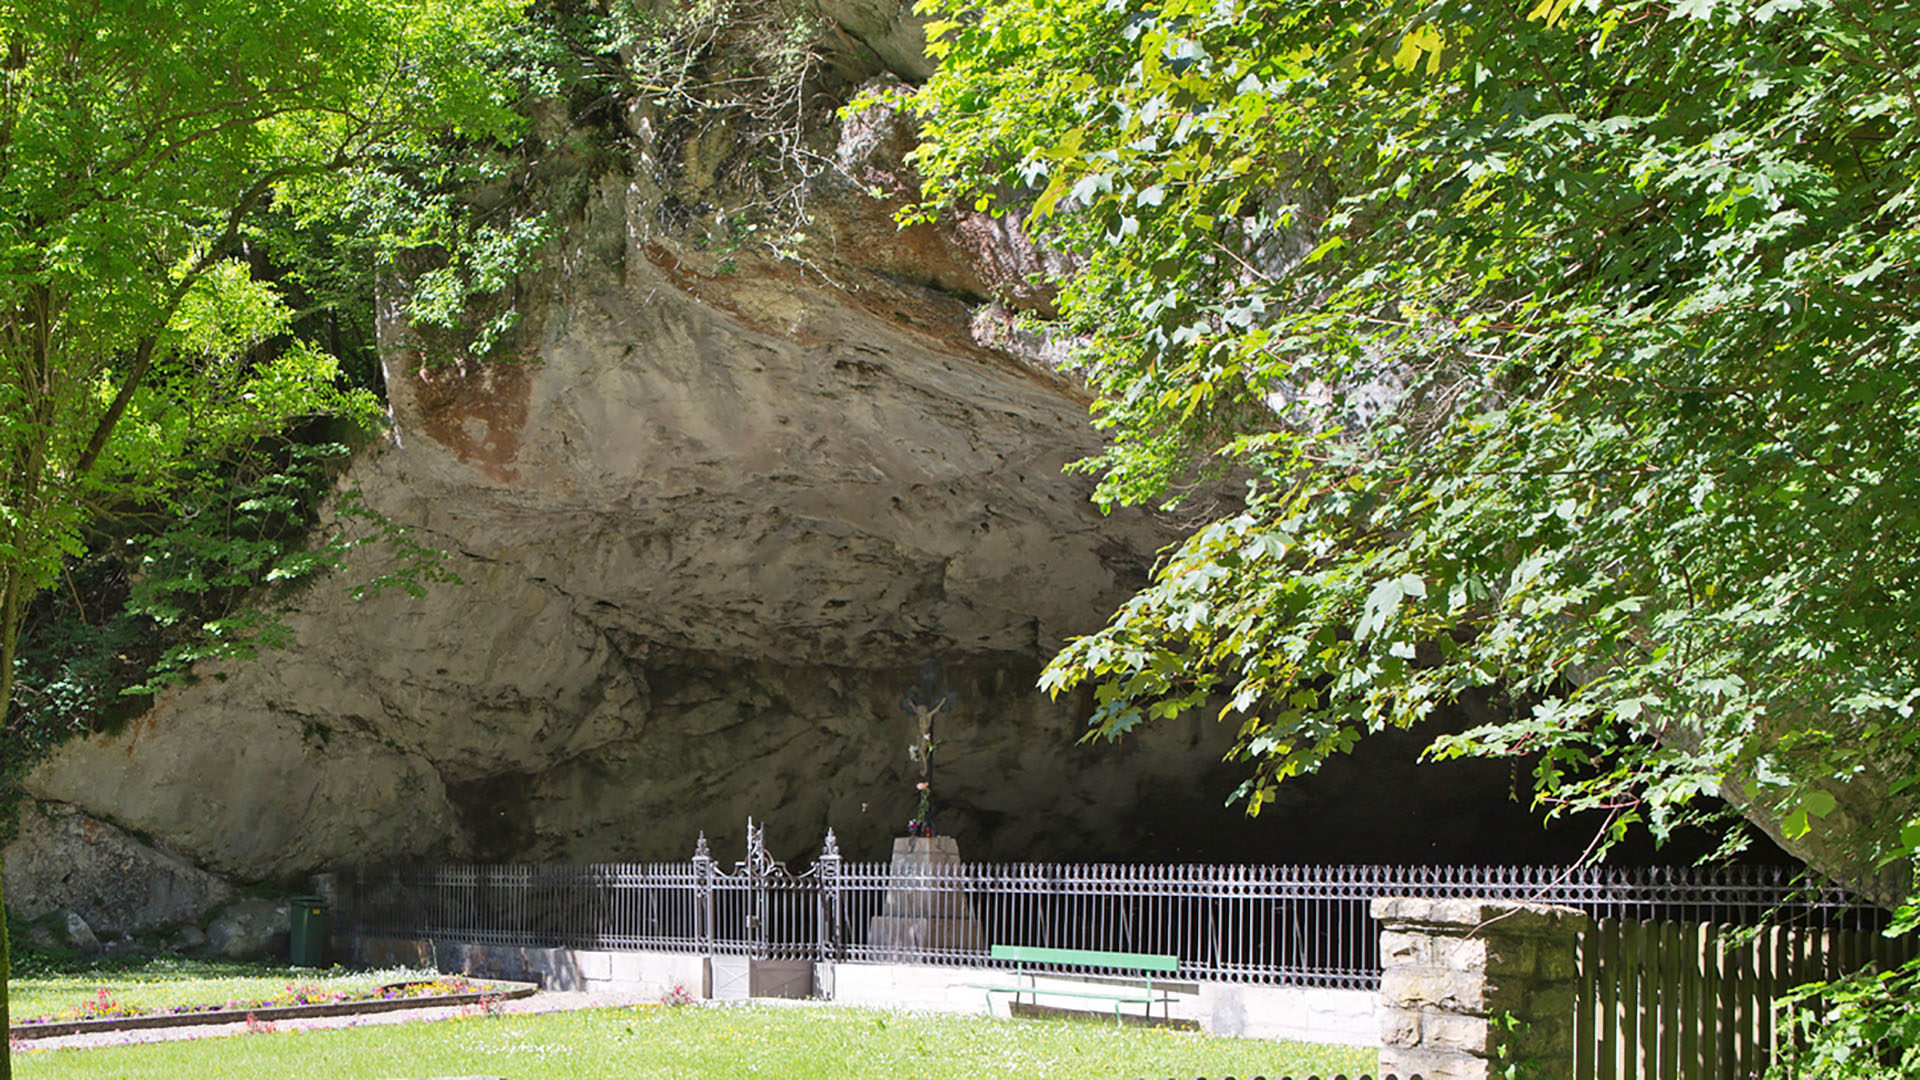 Les pèlerins affluent à la grotte Sainte-Colombe pour renouveler dans le Jura le miracle de la grotte de Lourdes. (Photo: Wikimedia Commons/Roland Zumbuehl/CC BY-SA 3.0)